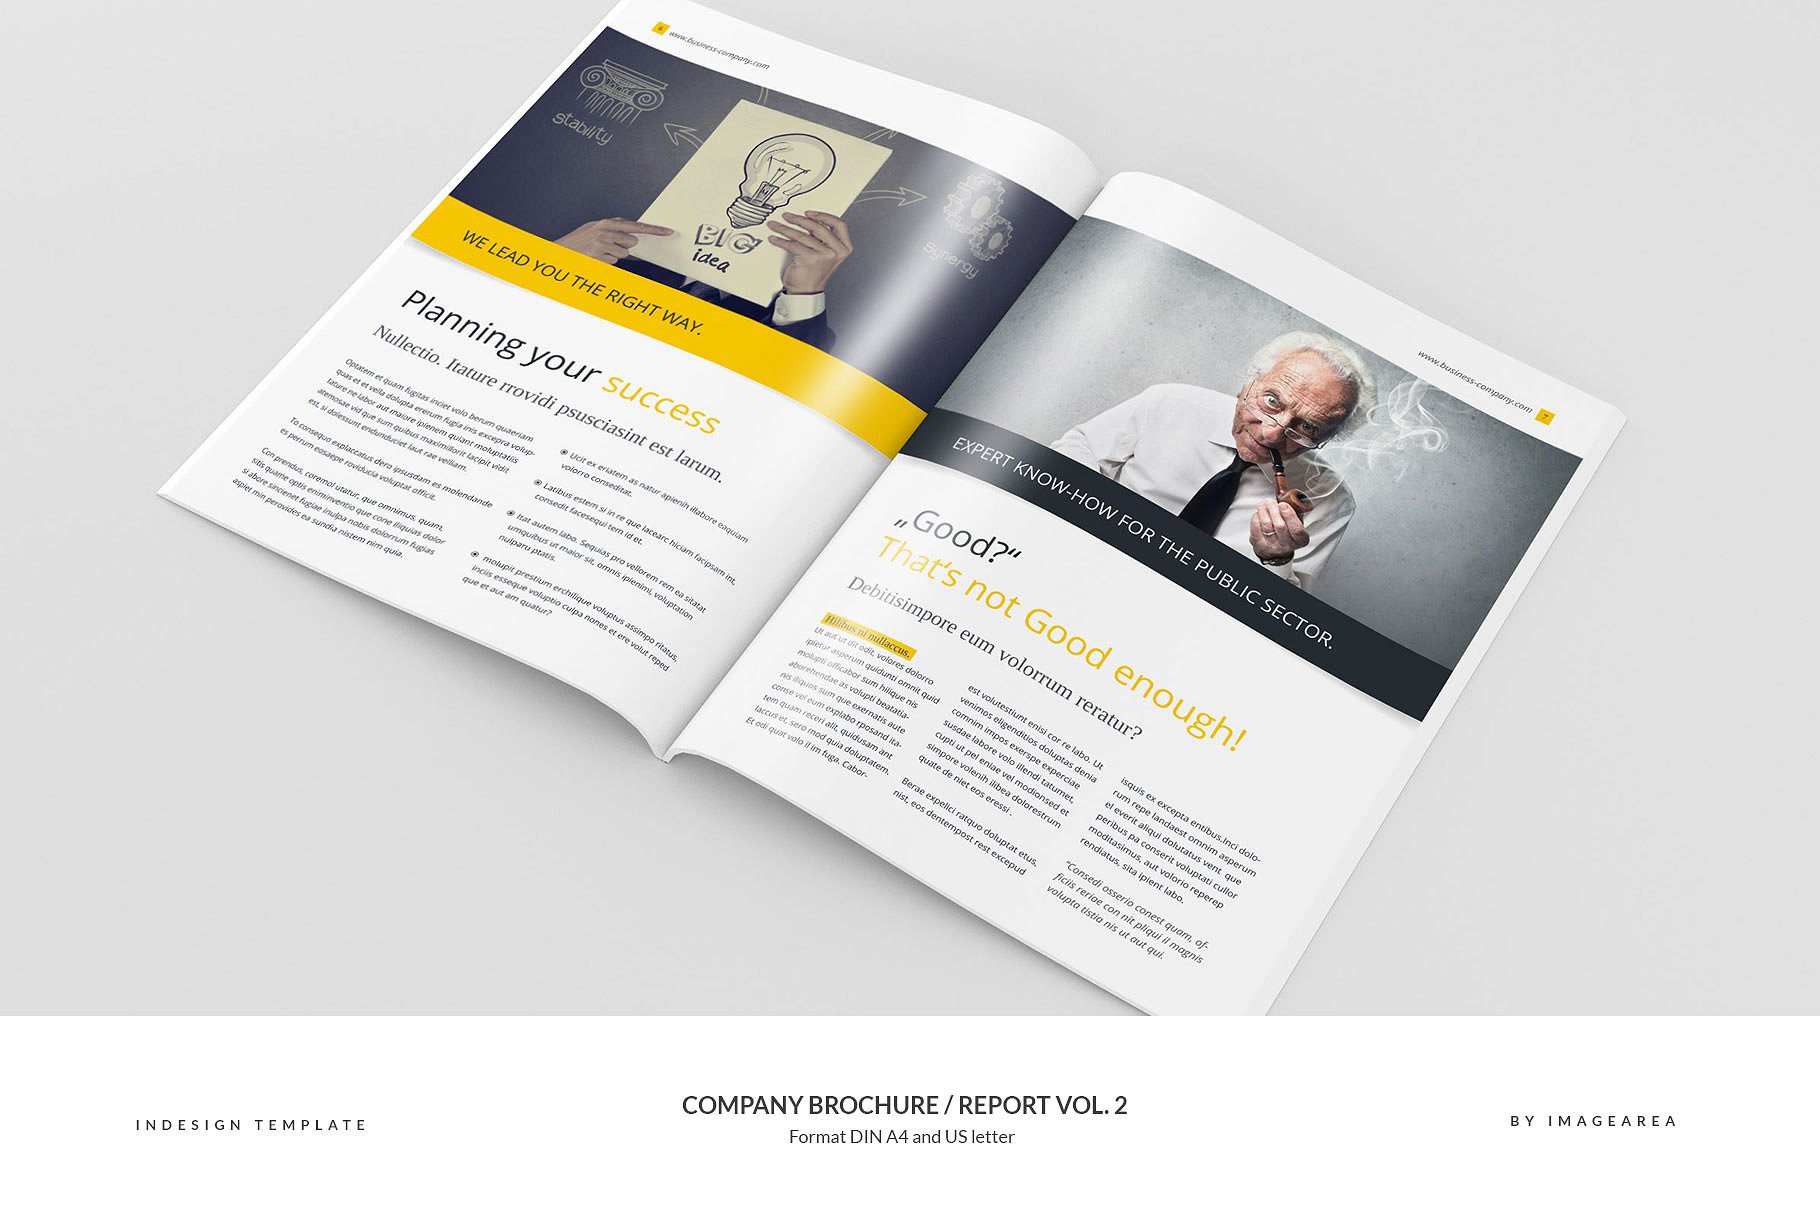 企业品牌宣传画册/企业年报设计模板v2 Company Brochure / Report Vol. 2插图(4)